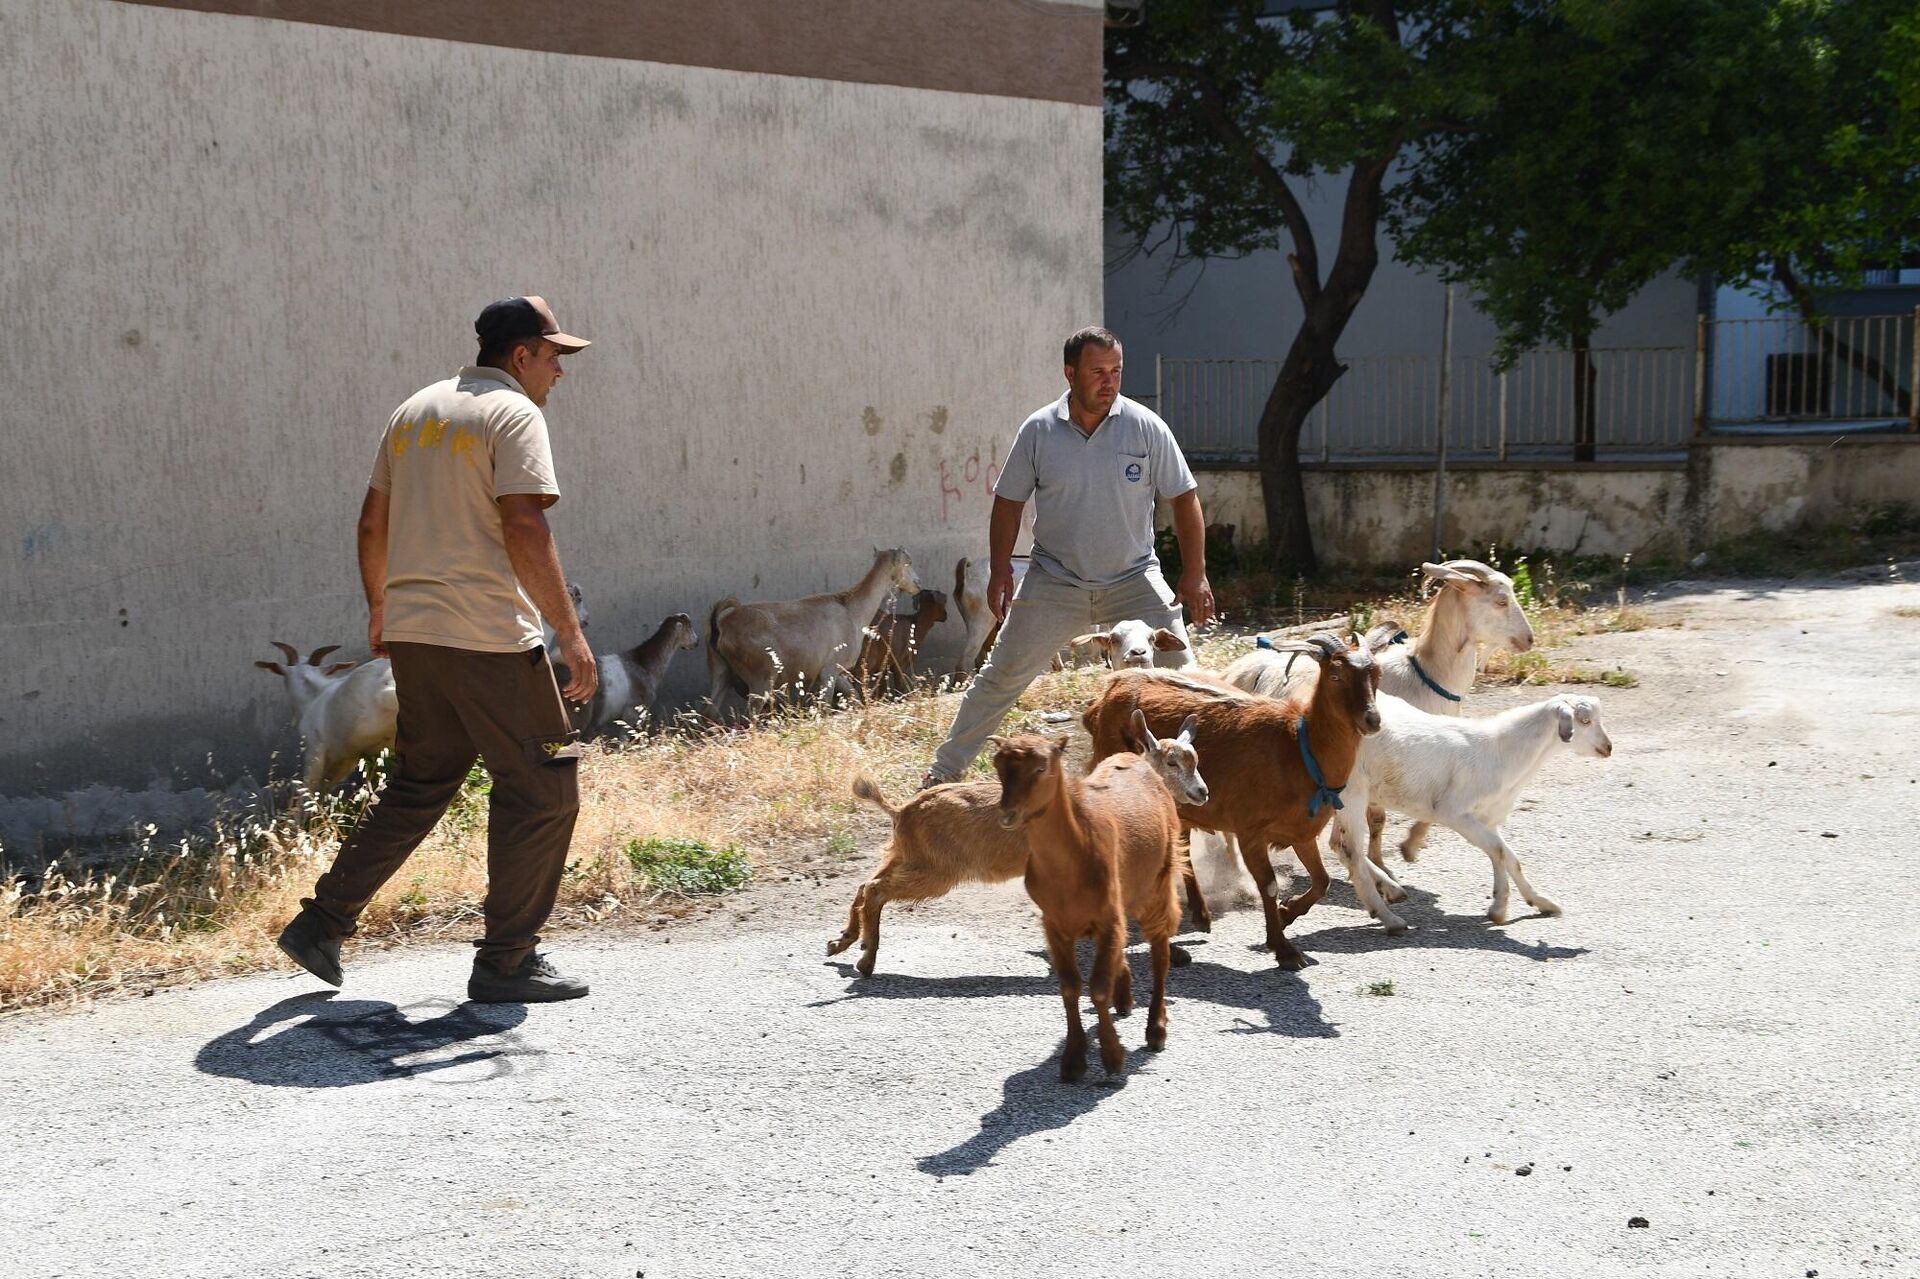  Aydın'ın Söke ilçesinde son dönemde başıboş gezen keçilerle ilgili vatandaşlardan gelen şikayetlerin artması üzerine ekipler tarafından yaklaşık 80 keçi yakalanarak koruma altına alındı. - Sputnik Türkiye, 1920, 21.06.2022